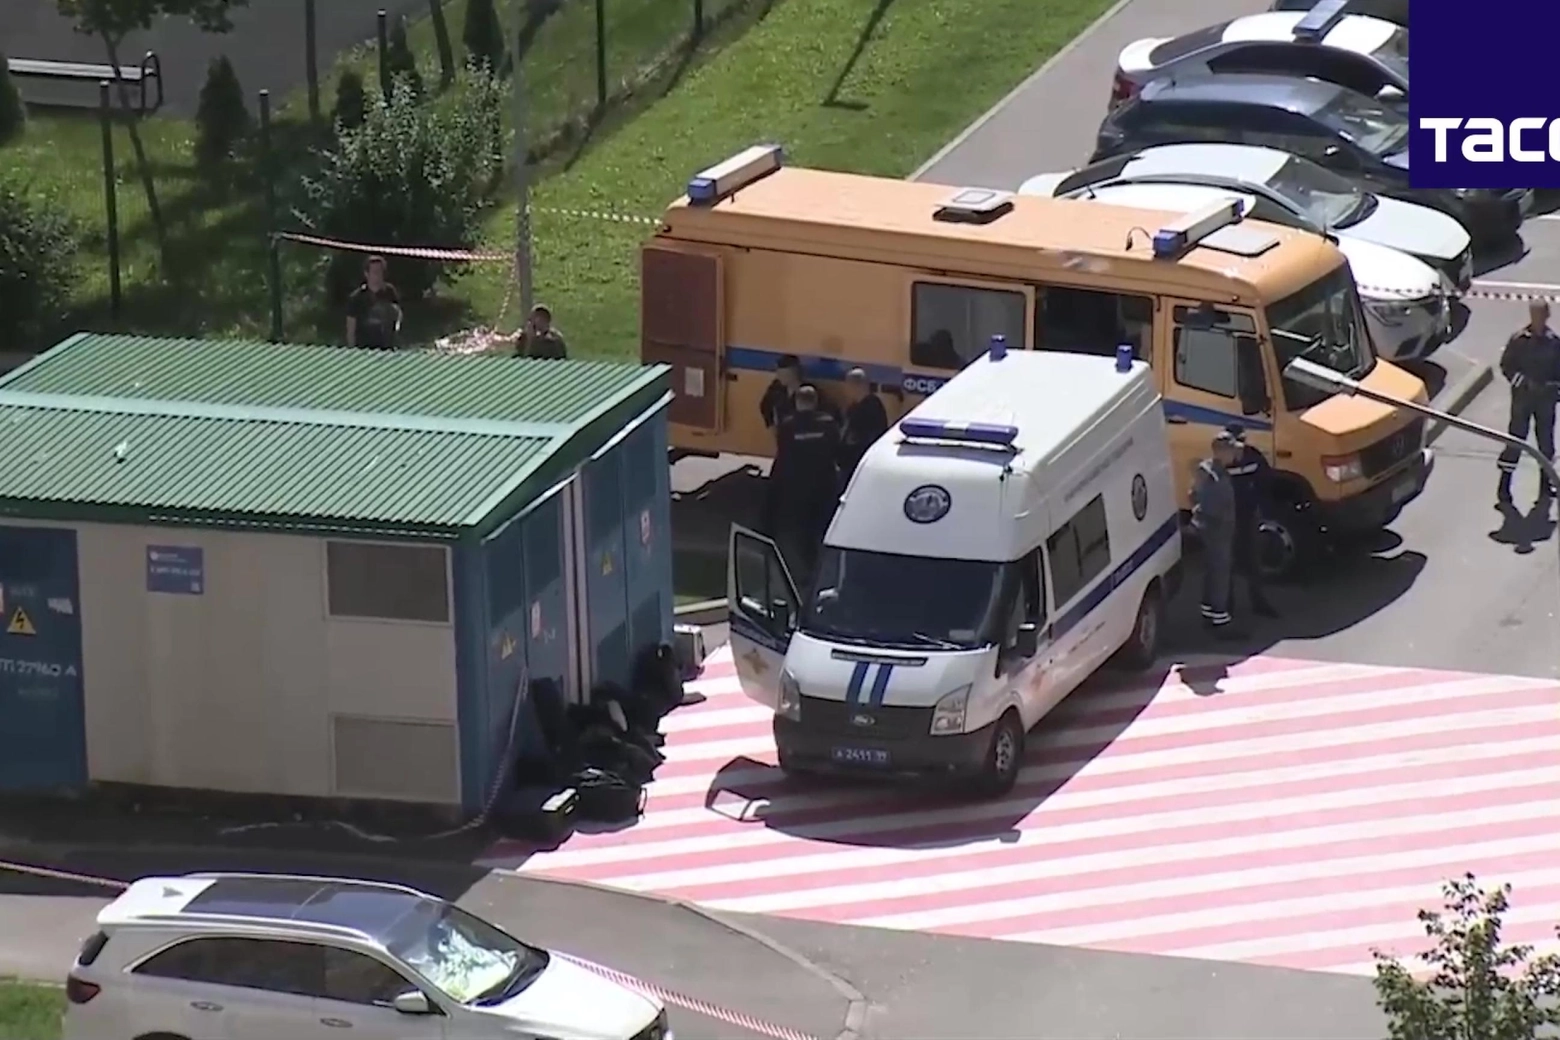 Un fermo immagine tratto da un video mostra l'automobile all'interno della quale è esploso un ordigno ferendo due persone, a nord di Mosca